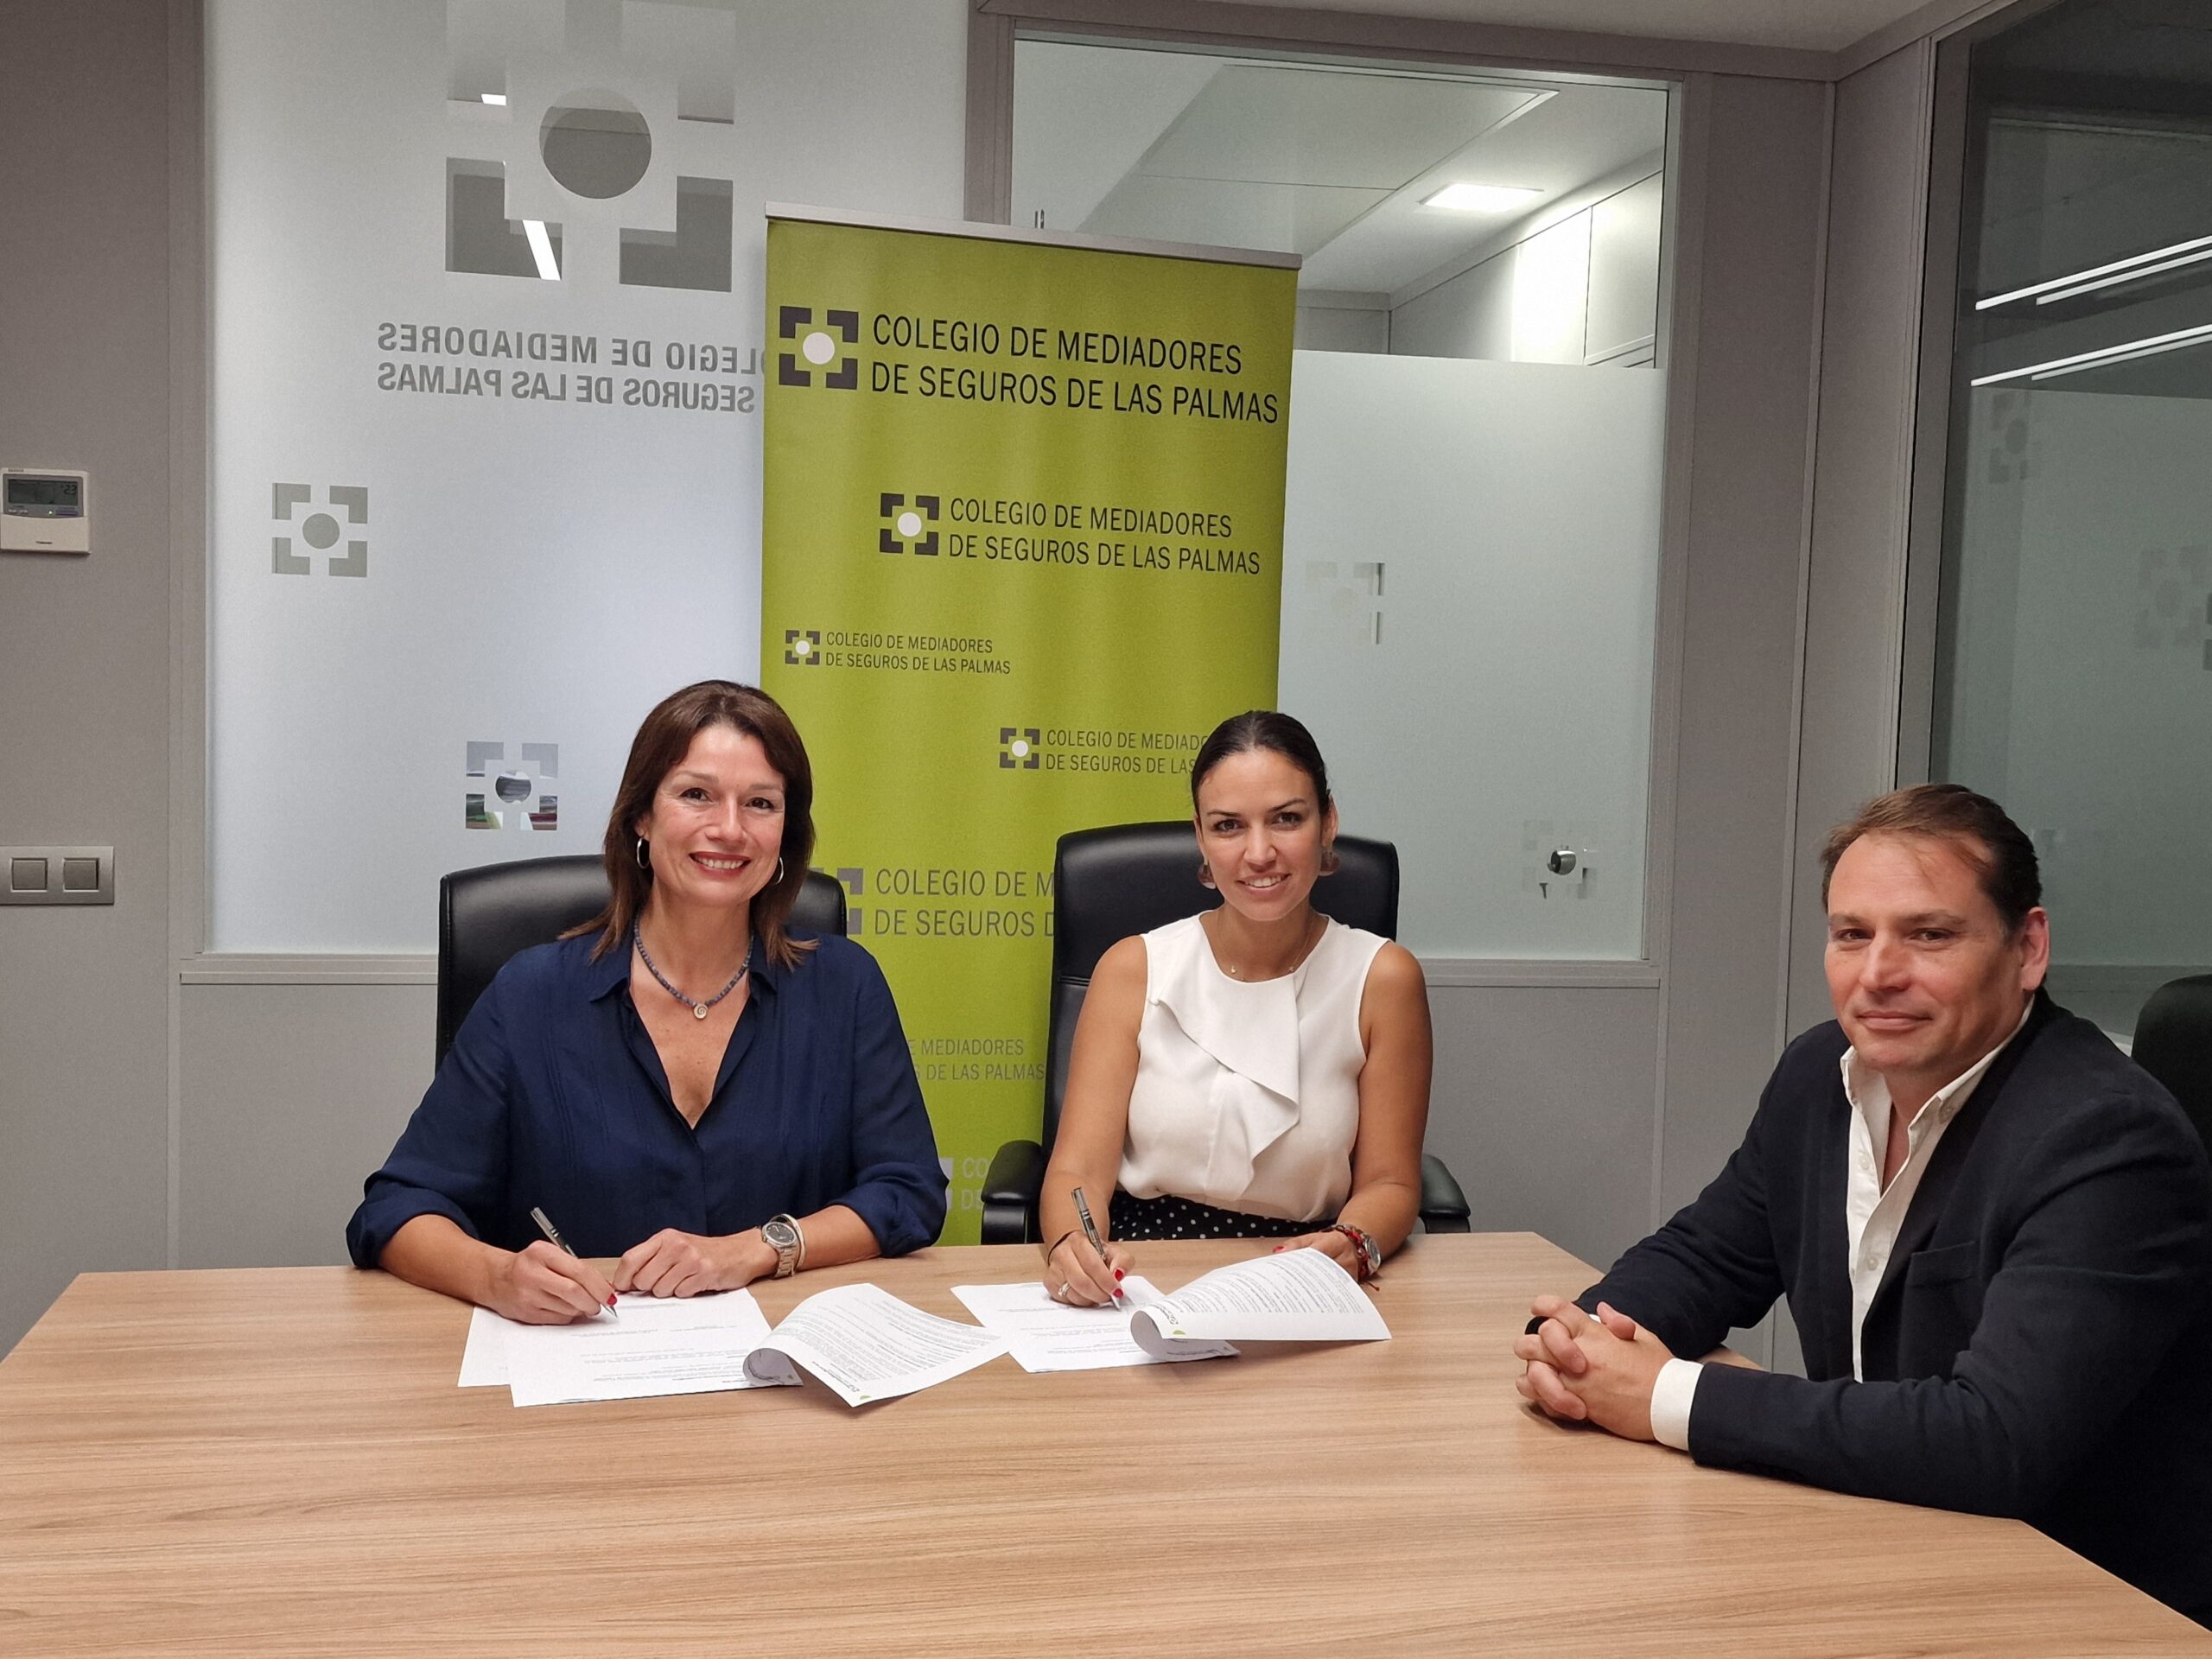 Fiatc Seguros firma el Protocolo de colaboración del Colegio de Mediadores de Seguros de Las Palmas